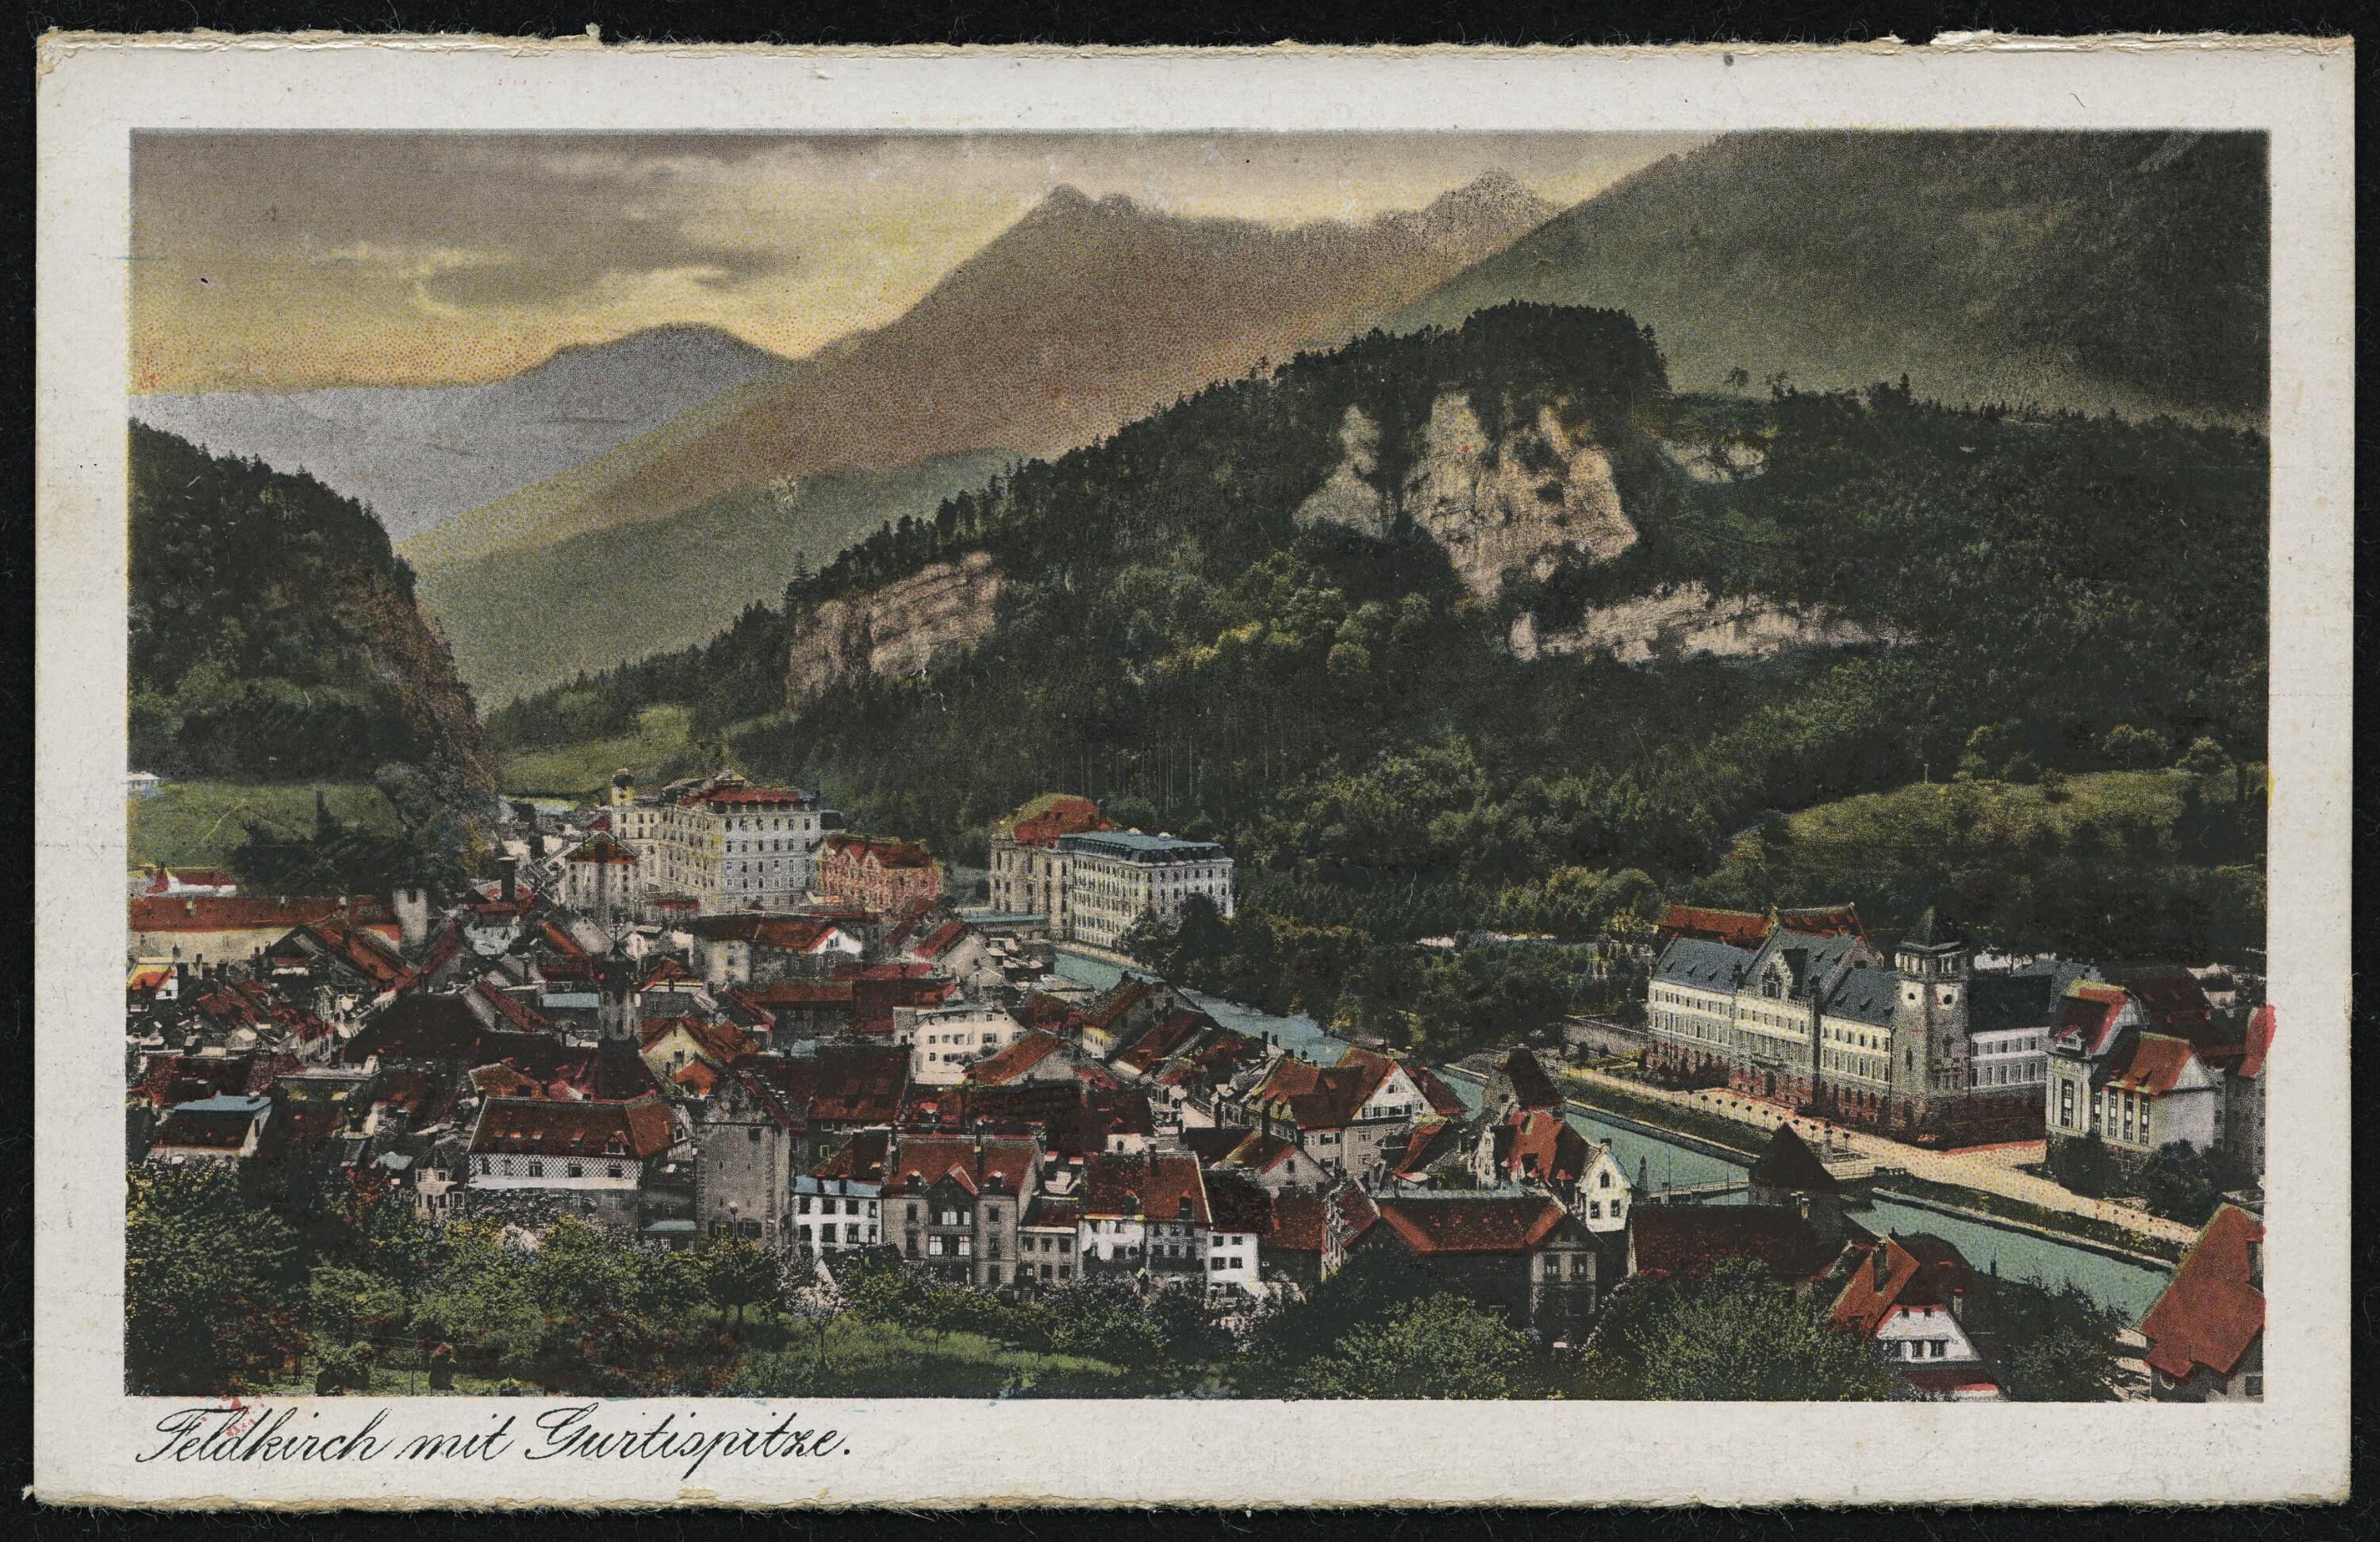 Feldkirch mit Gurtisspitze></div>


    <hr>
    <div class=